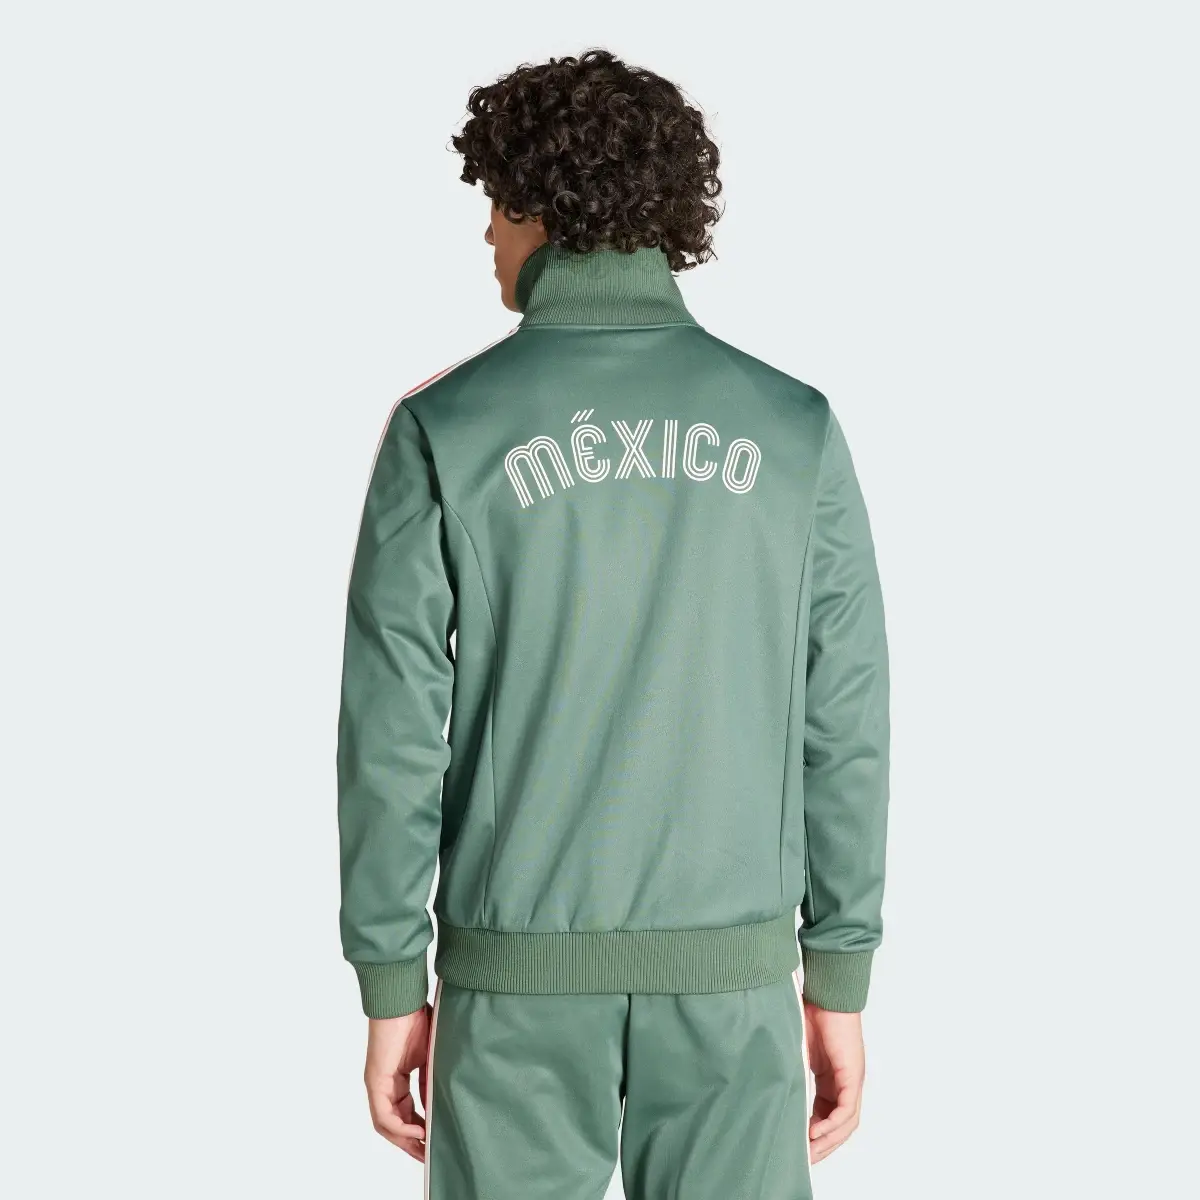 Adidas Veste de survêtement Beckenbauer Mexique. 3